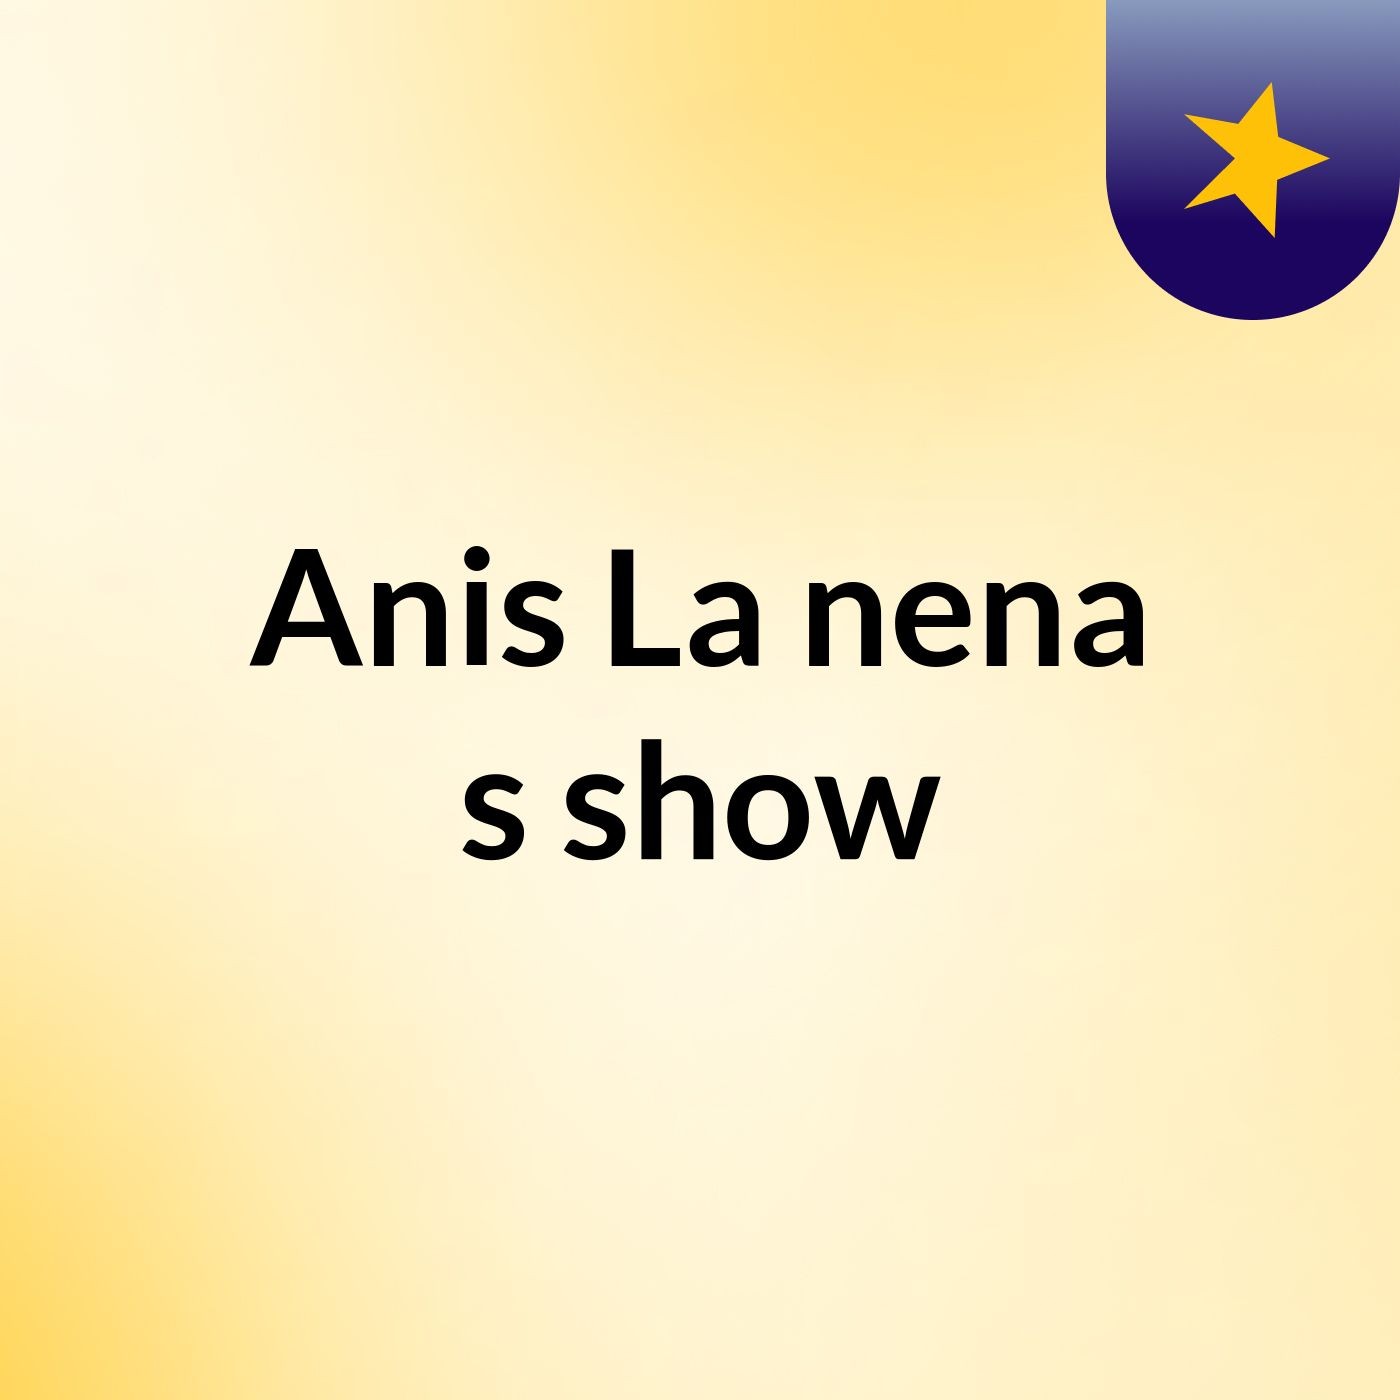 Anis La nena's show